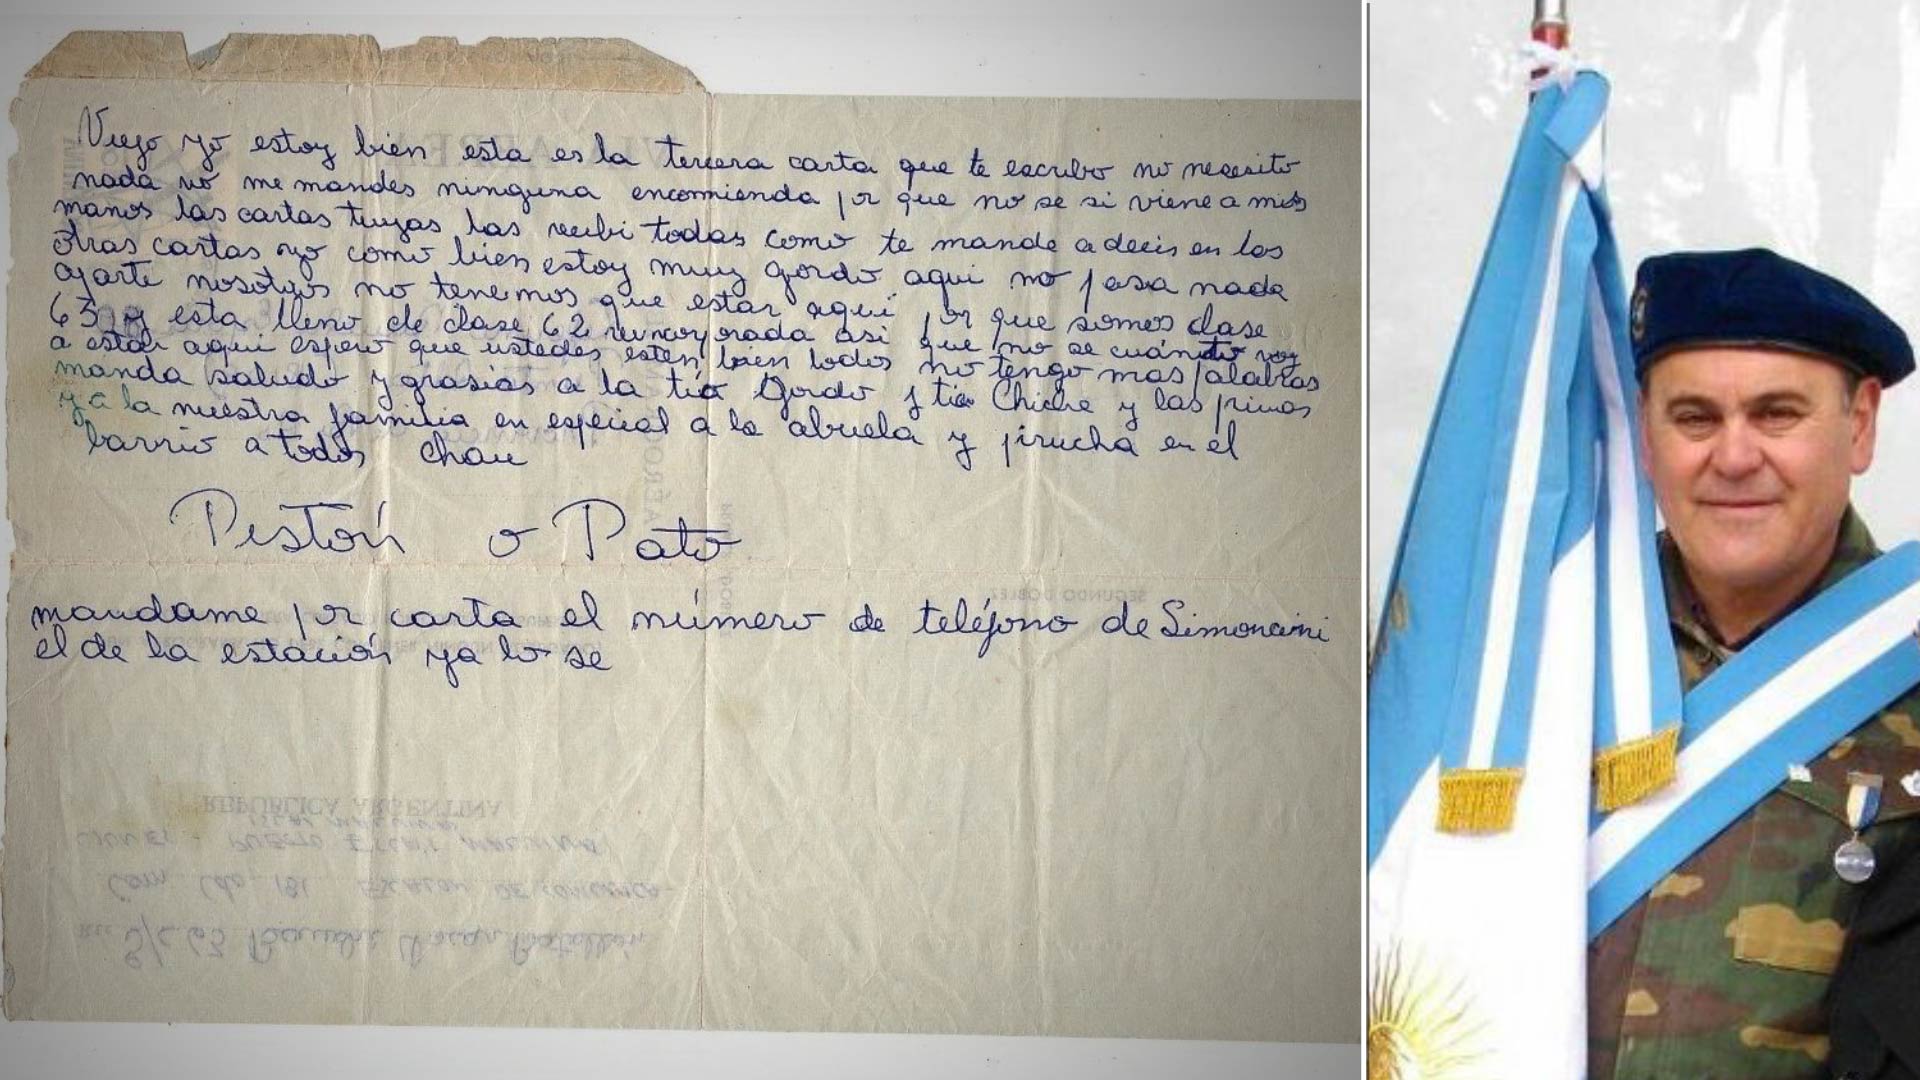 Halló una carta que envió desde Malvinas en un sitio de subastas inglés: “Quiero recuperarla y dársela a mis padres”